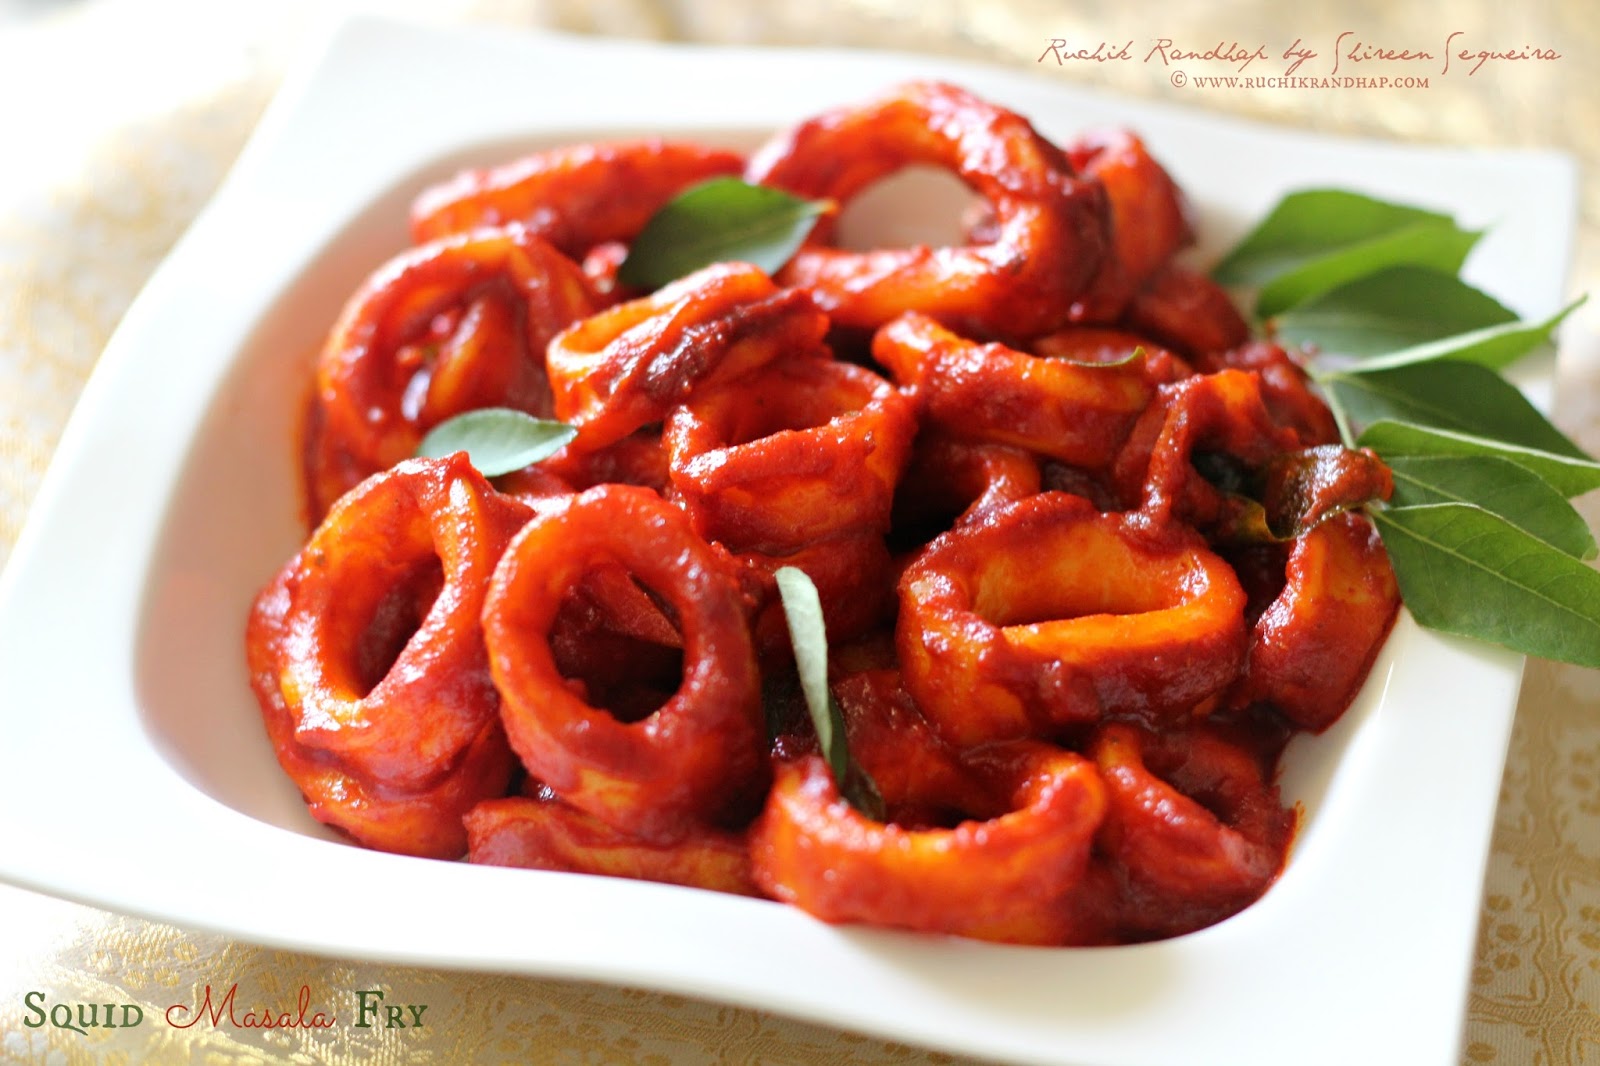 Squid Masala Fry Mangalorean Style Ruchik Randhap